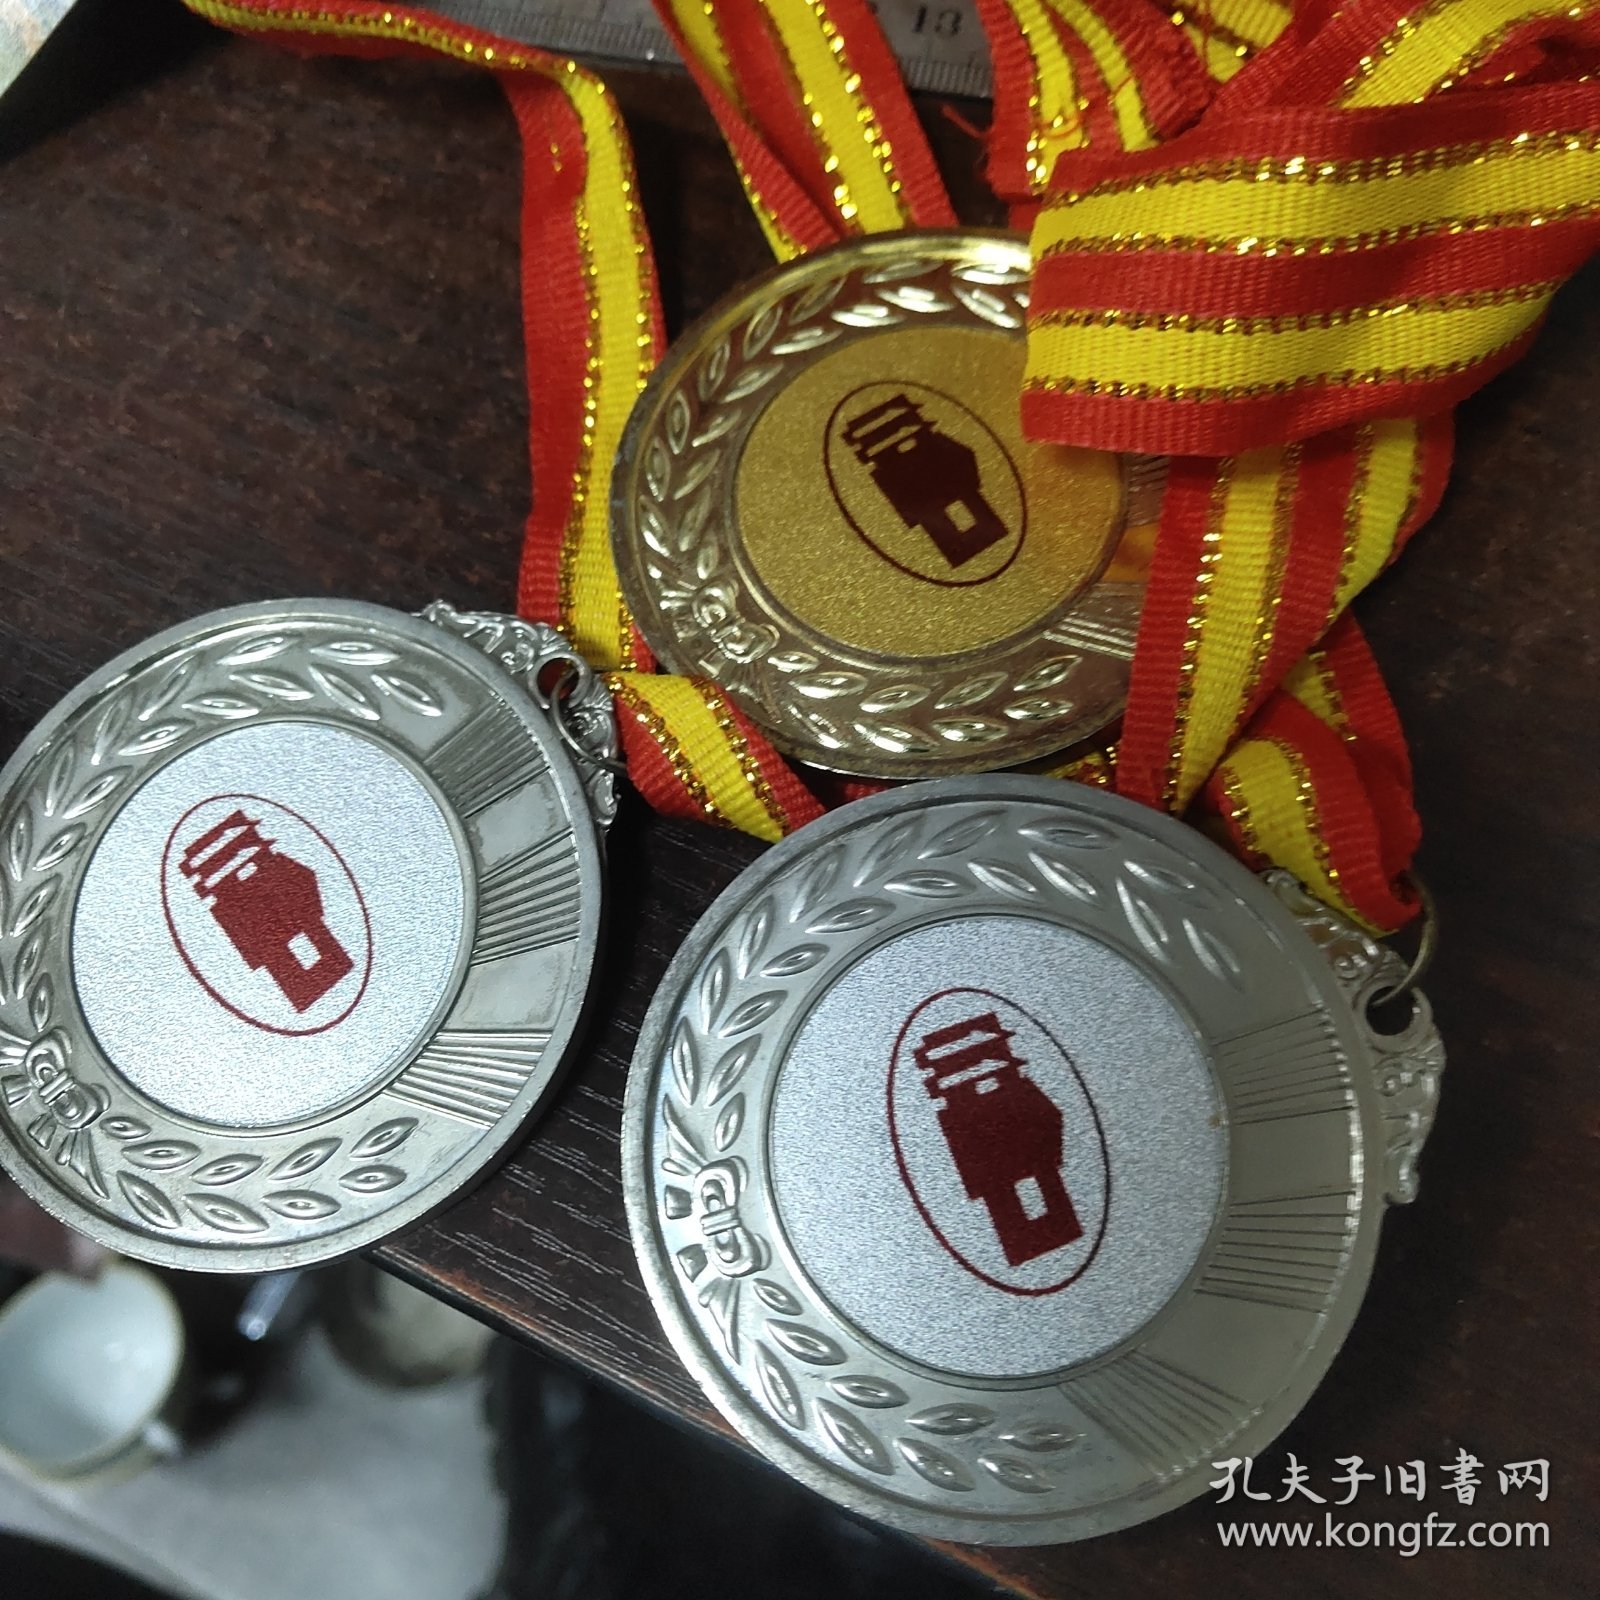 武汉市第十一中学田径运动会冠军、亚军奖牌三枚